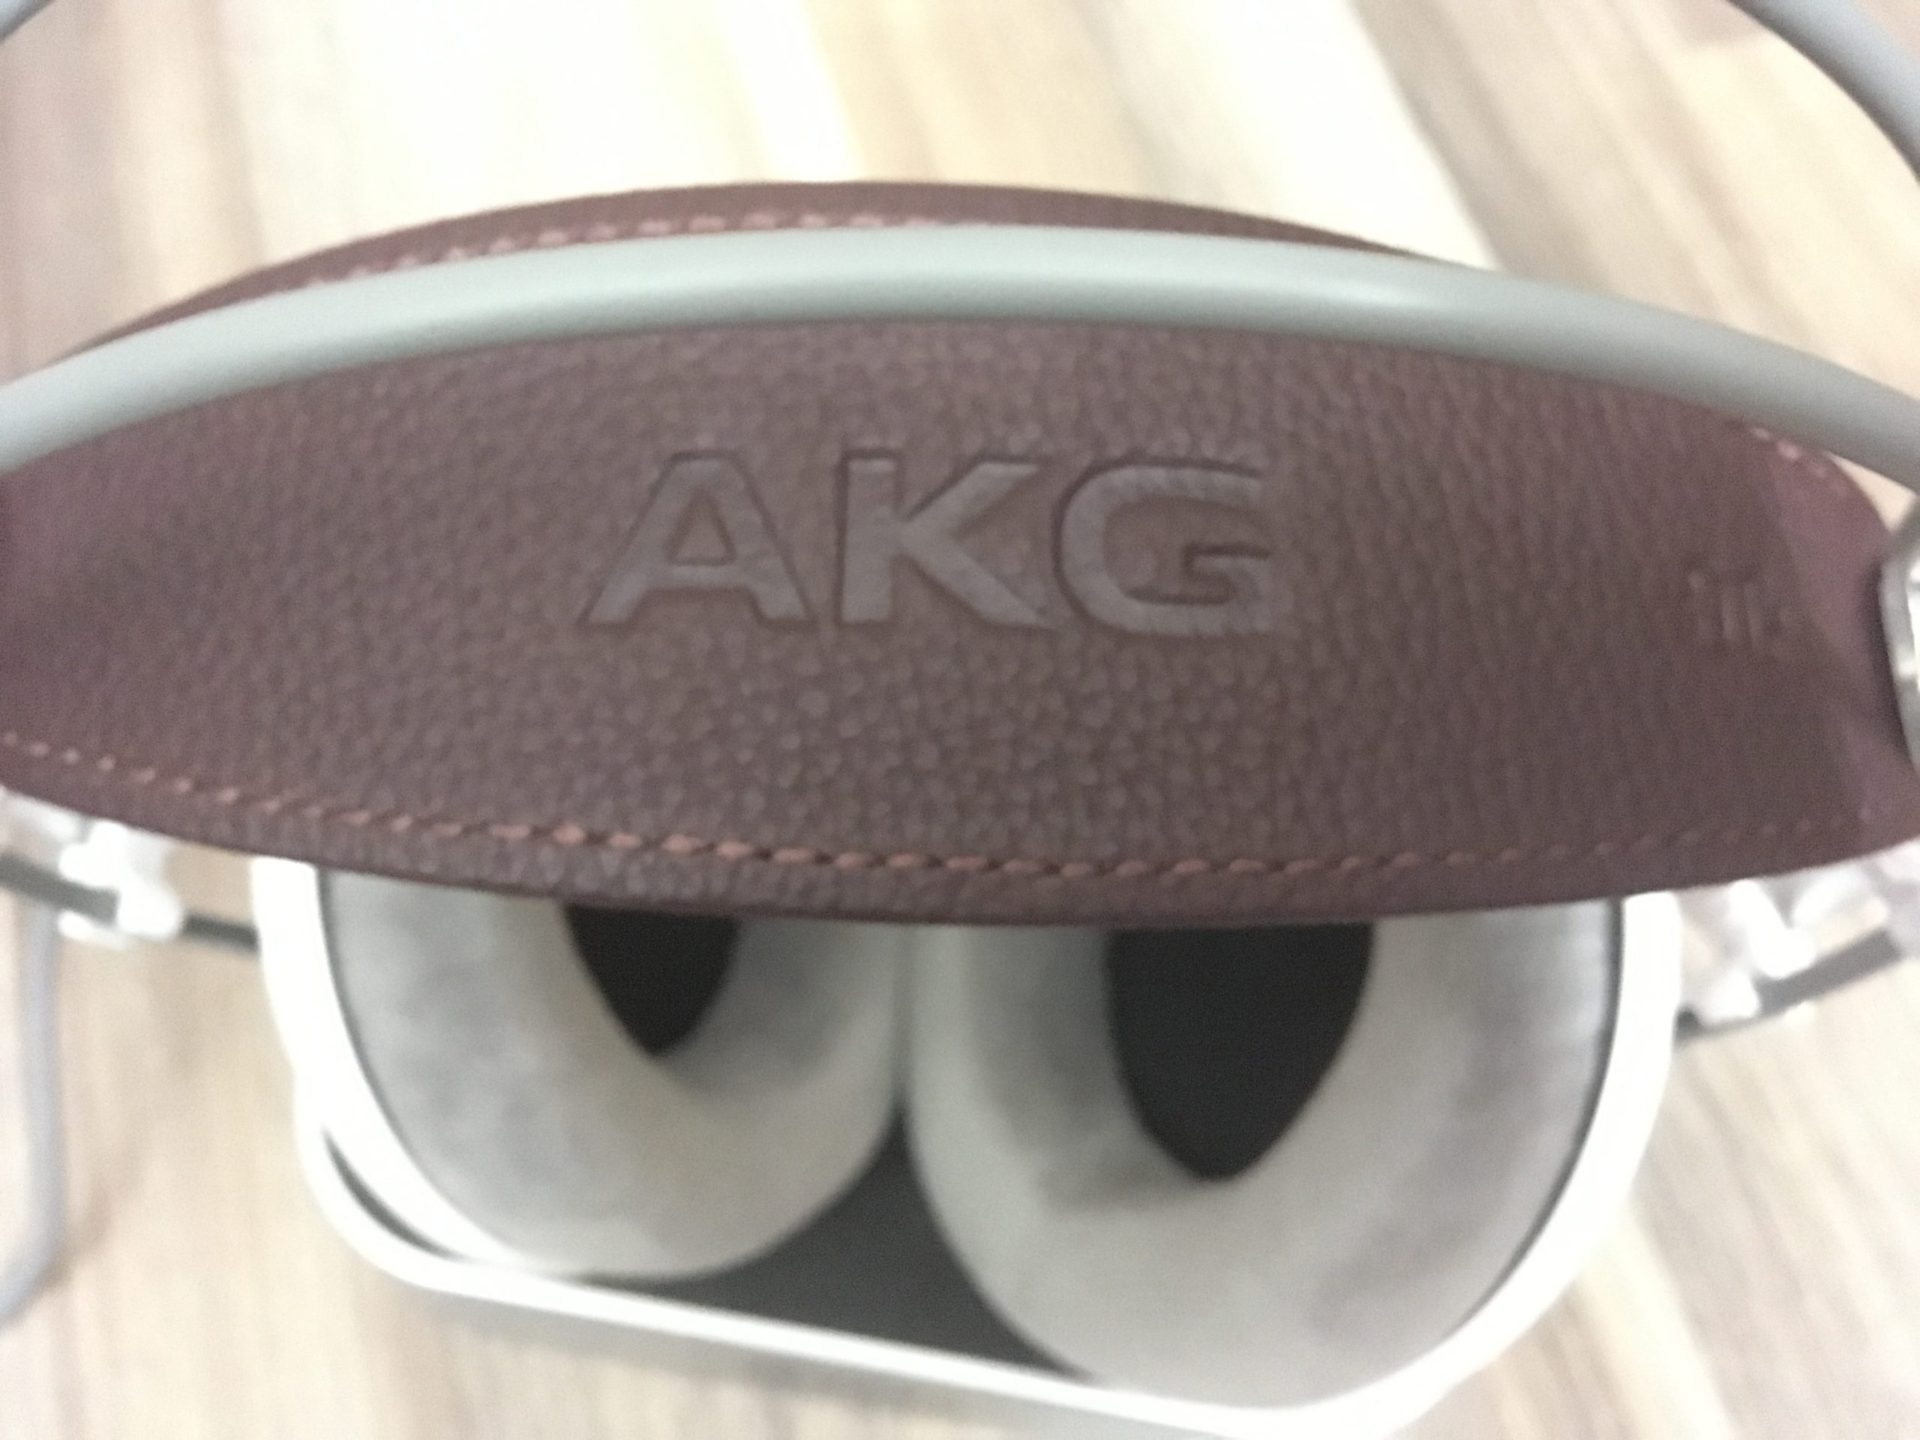 AKG K701